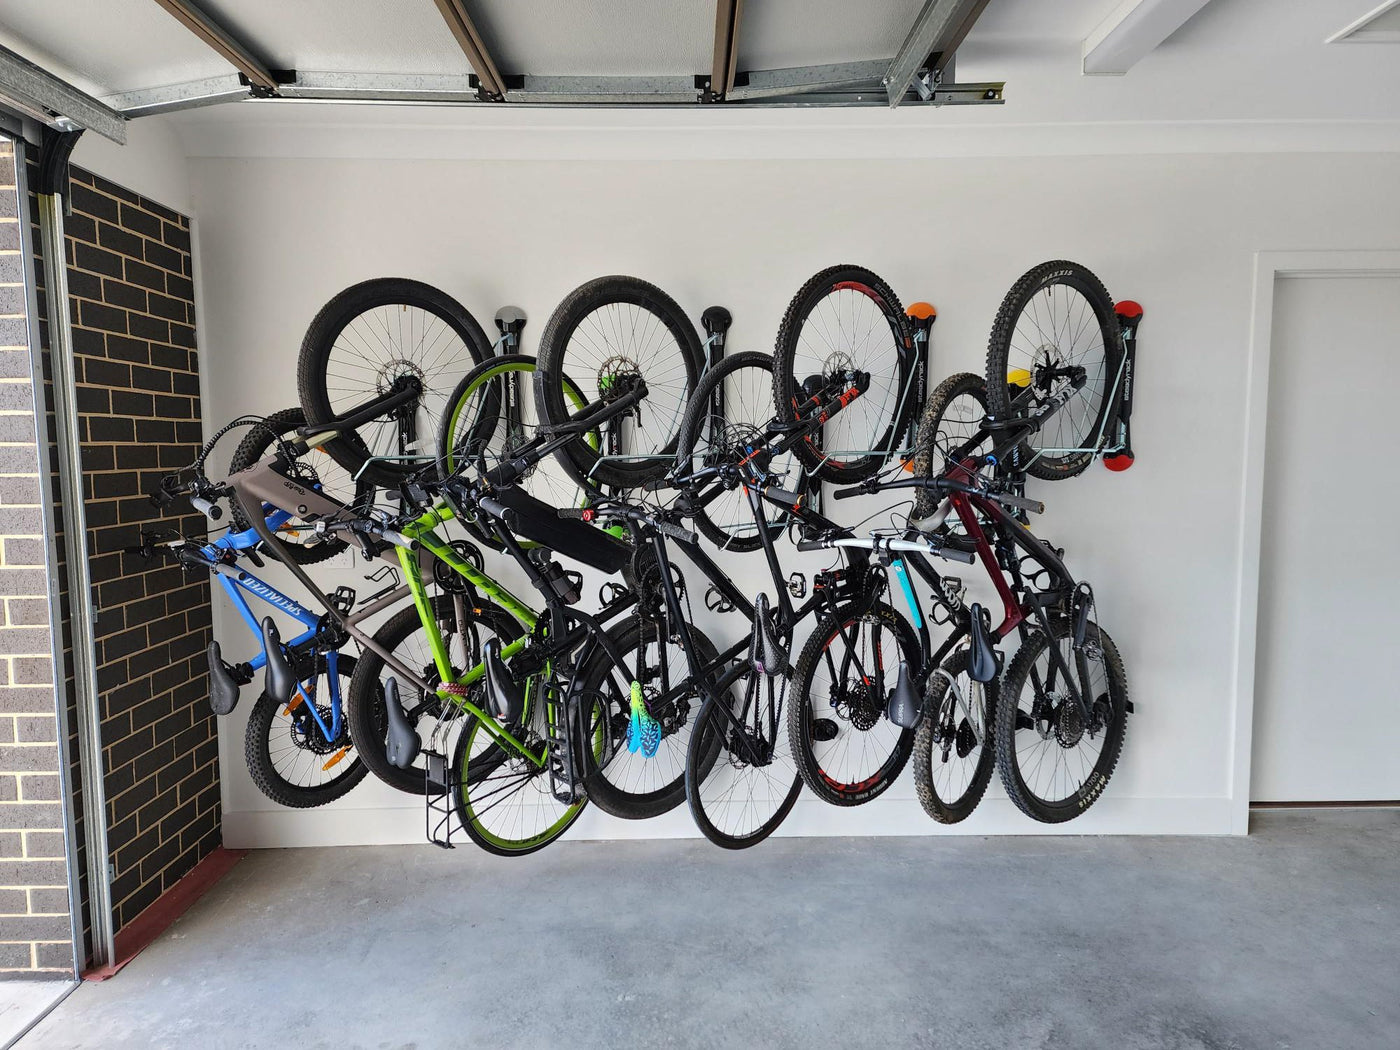  HOMEE Bike Hanger Wall Mount Foldable Bicycle Rack